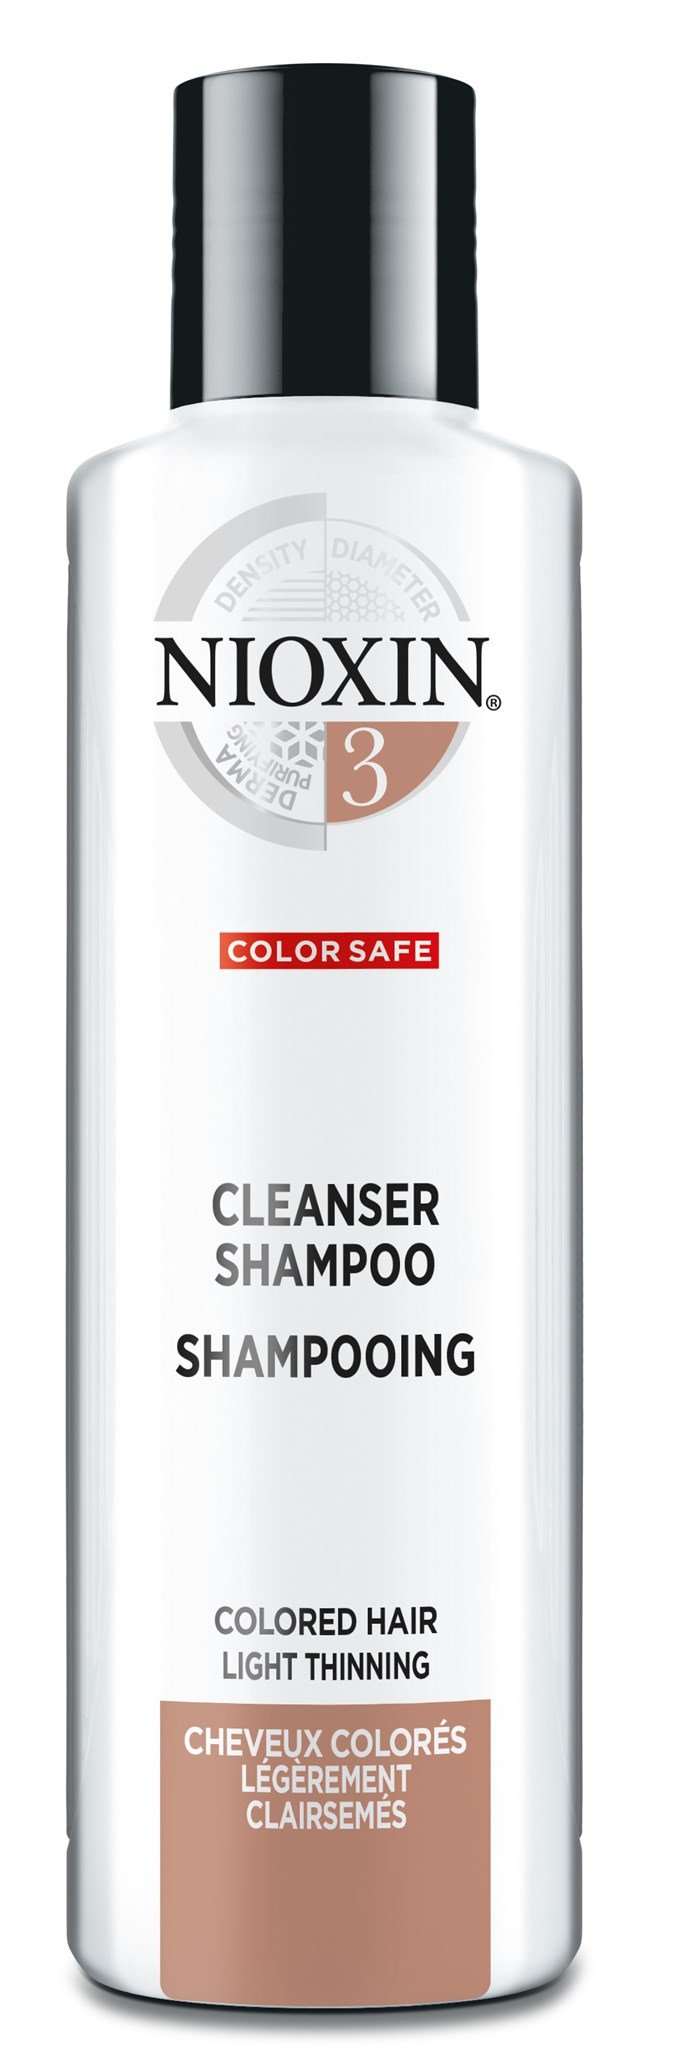 NIOXIN - System 3 Cleanser Shampoo 300ml